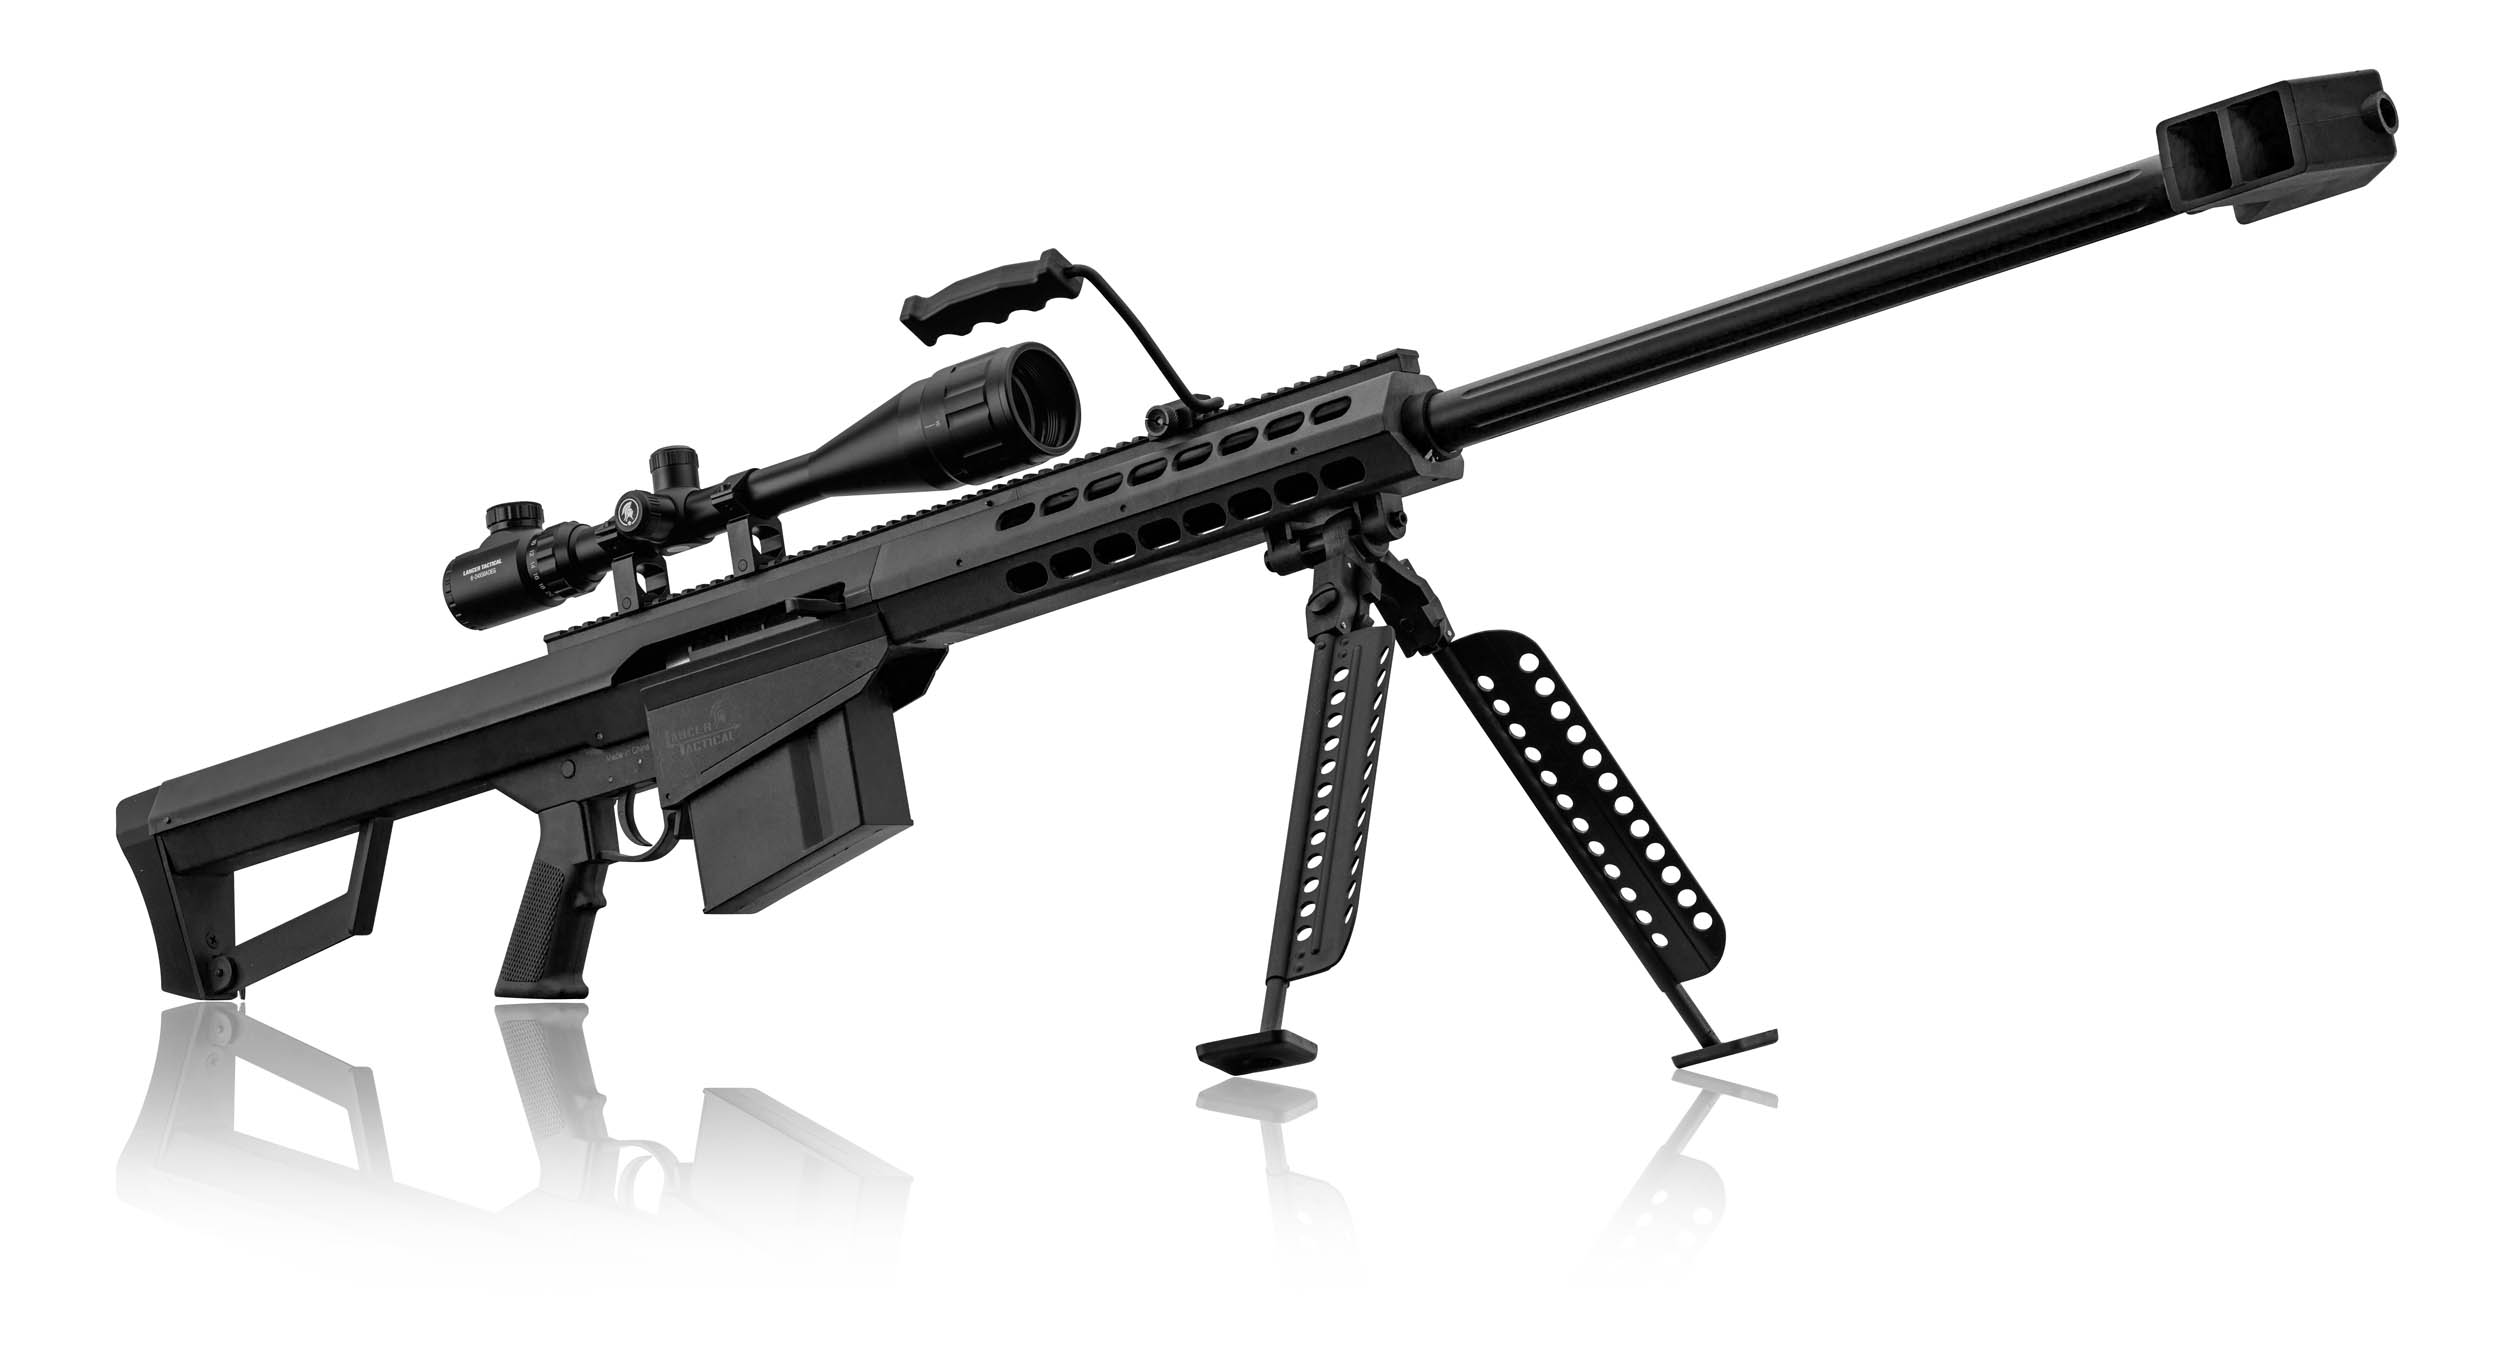 PCKLR3050-02 Pack Sniper LT-20 noir M82 1,5J + lunette + bi-pied + poignée